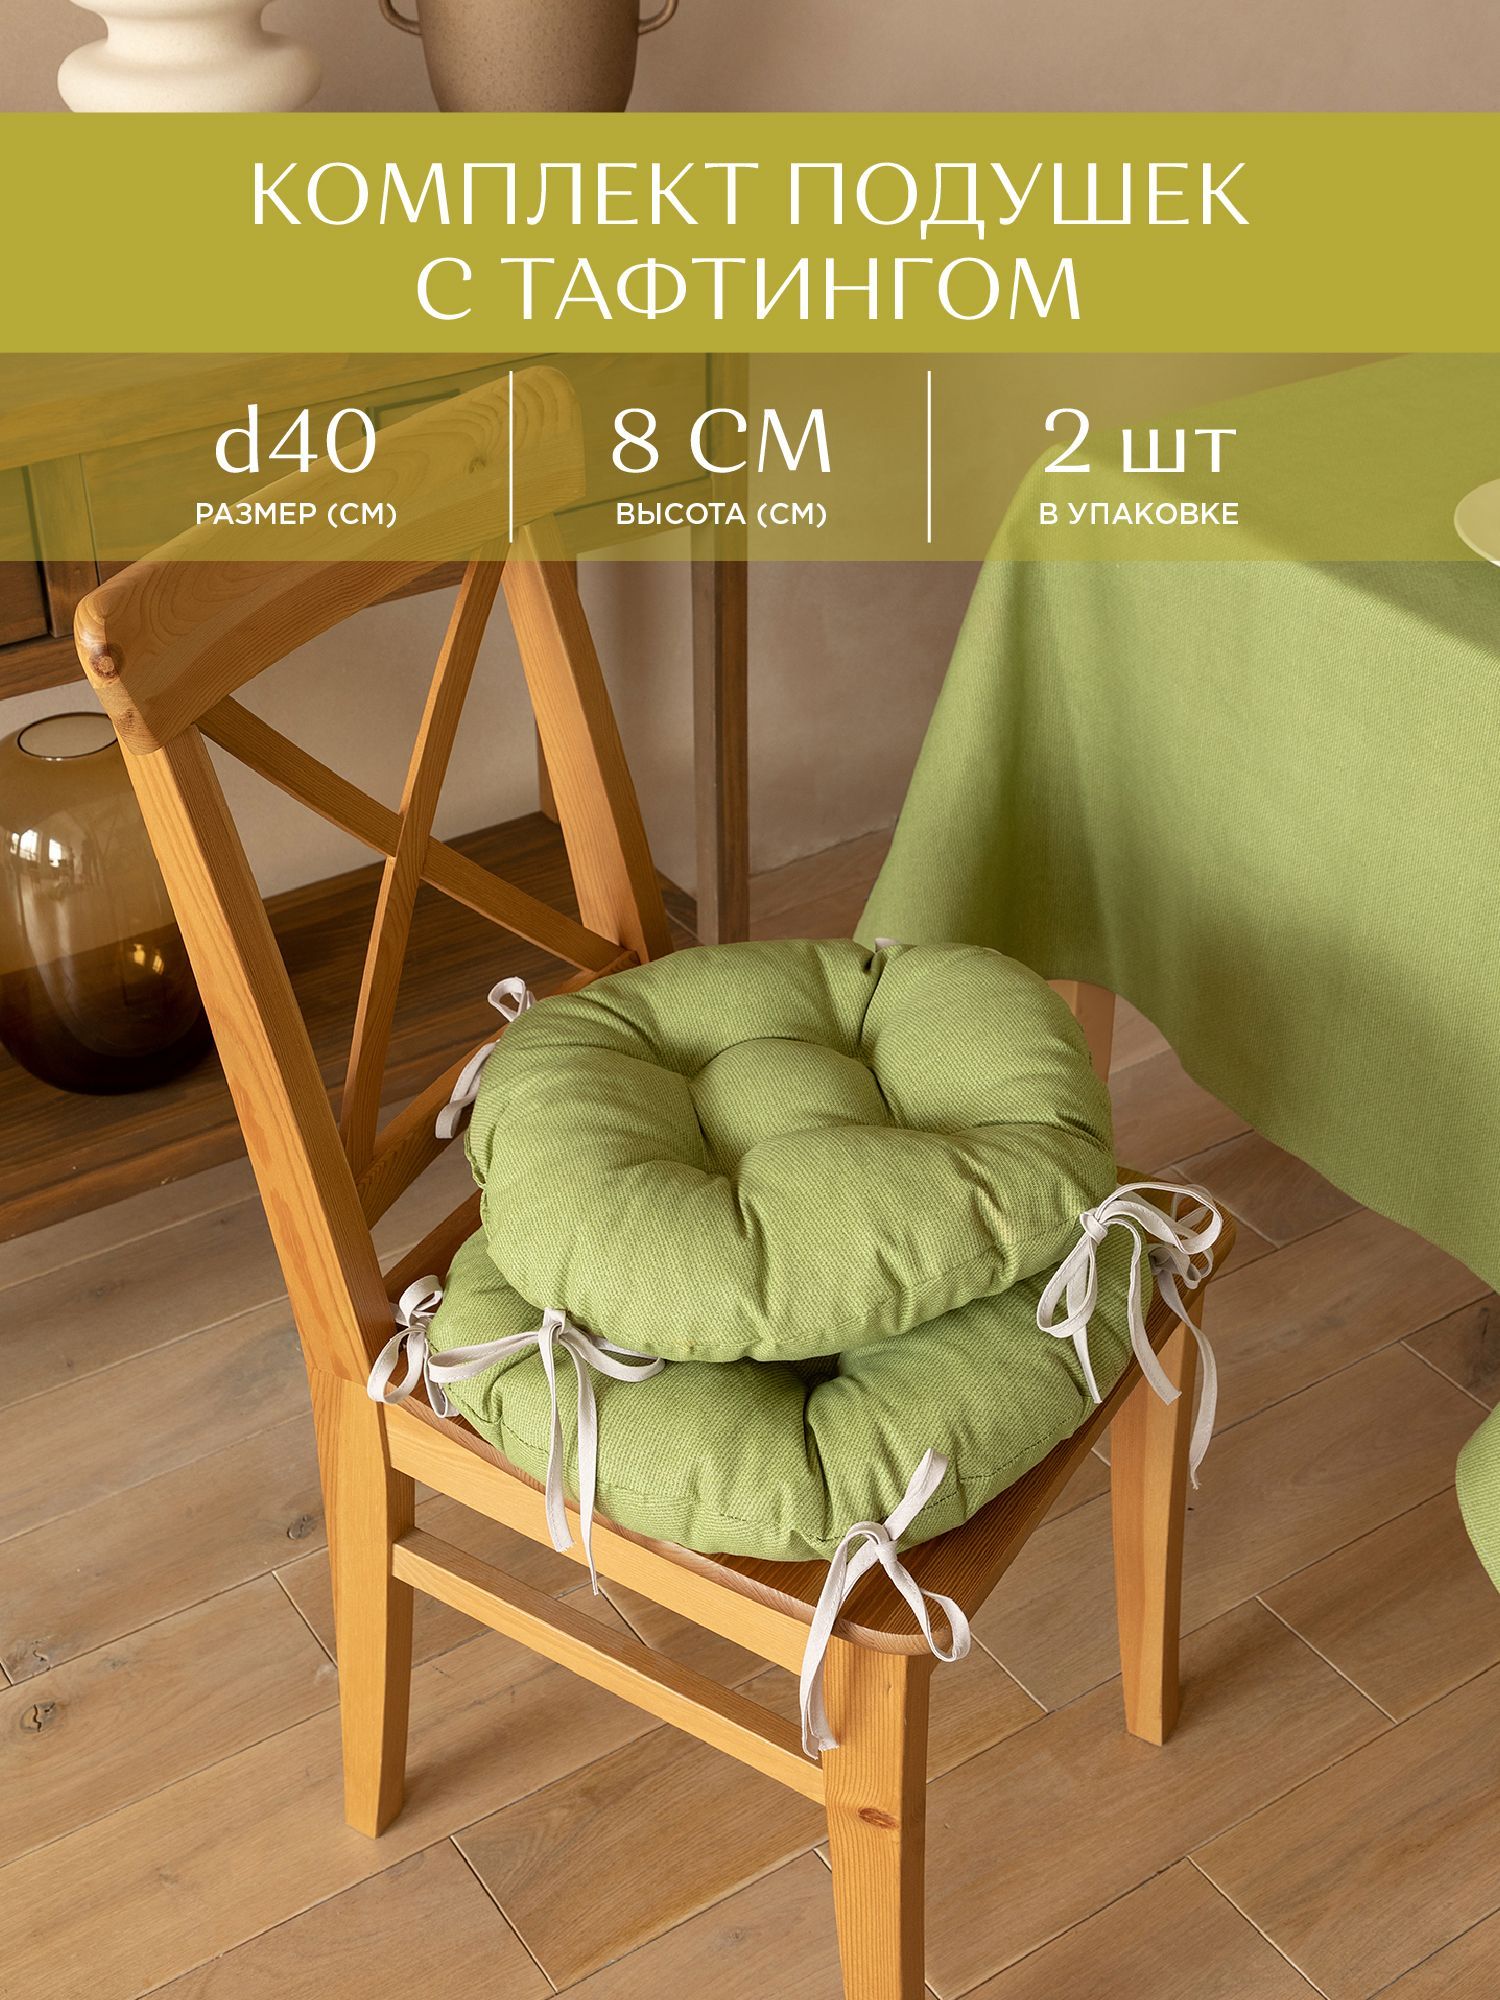 Комплект подушек на стул с тафтингом круглых d40 (2 шт.) Унисон  30004-21 Basic зеленый